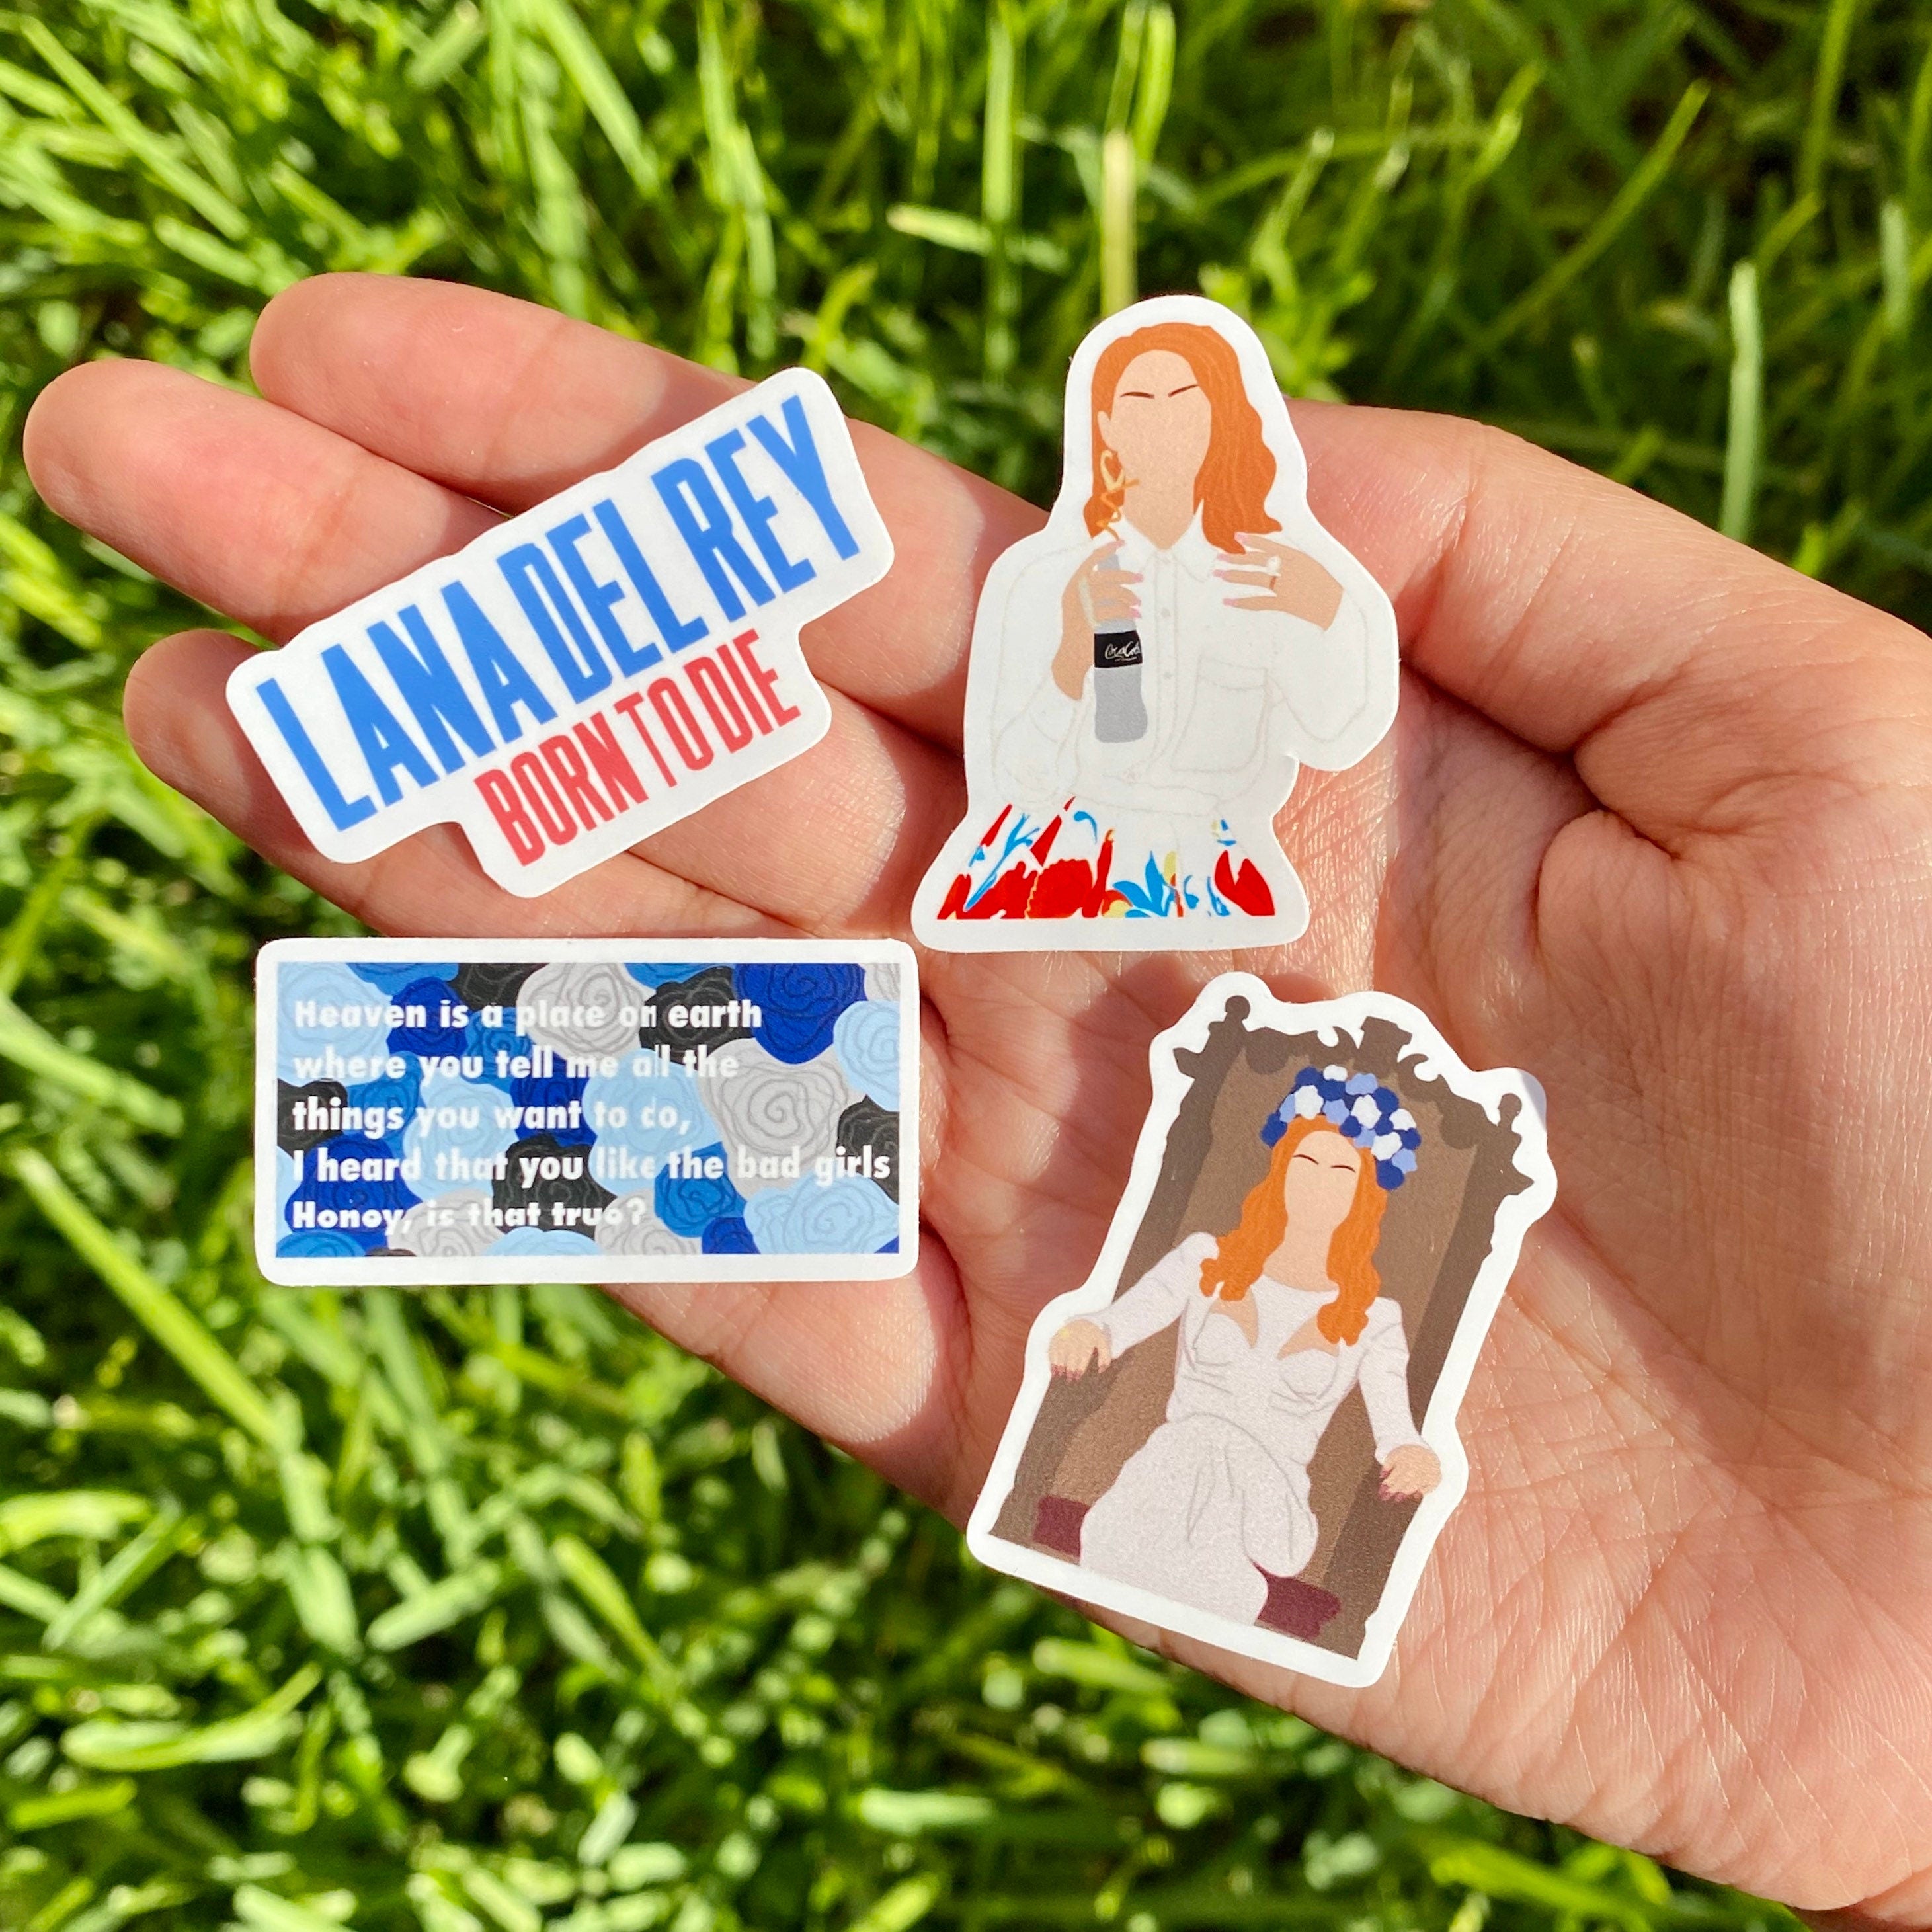 25pcs Lana Del Rey Stickers – Jeunesstore